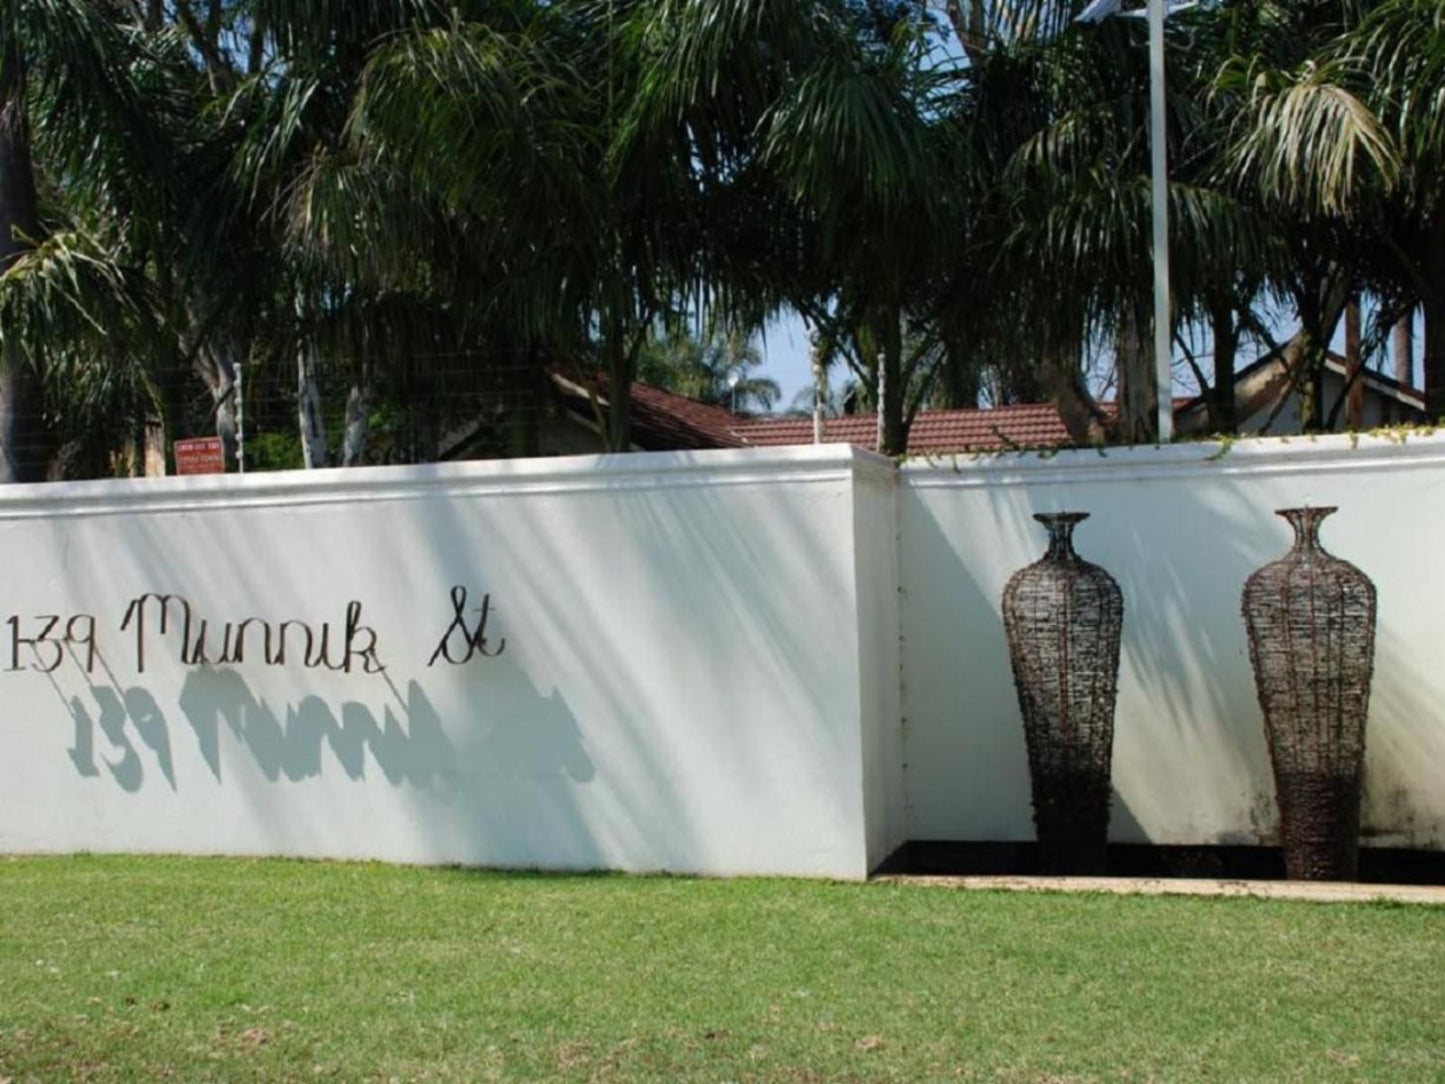 139 On Munnik Guest House Makhado Louis Trichardt Limpopo Province South Africa Palm Tree, Plant, Nature, Wood, Cemetery, Religion, Grave